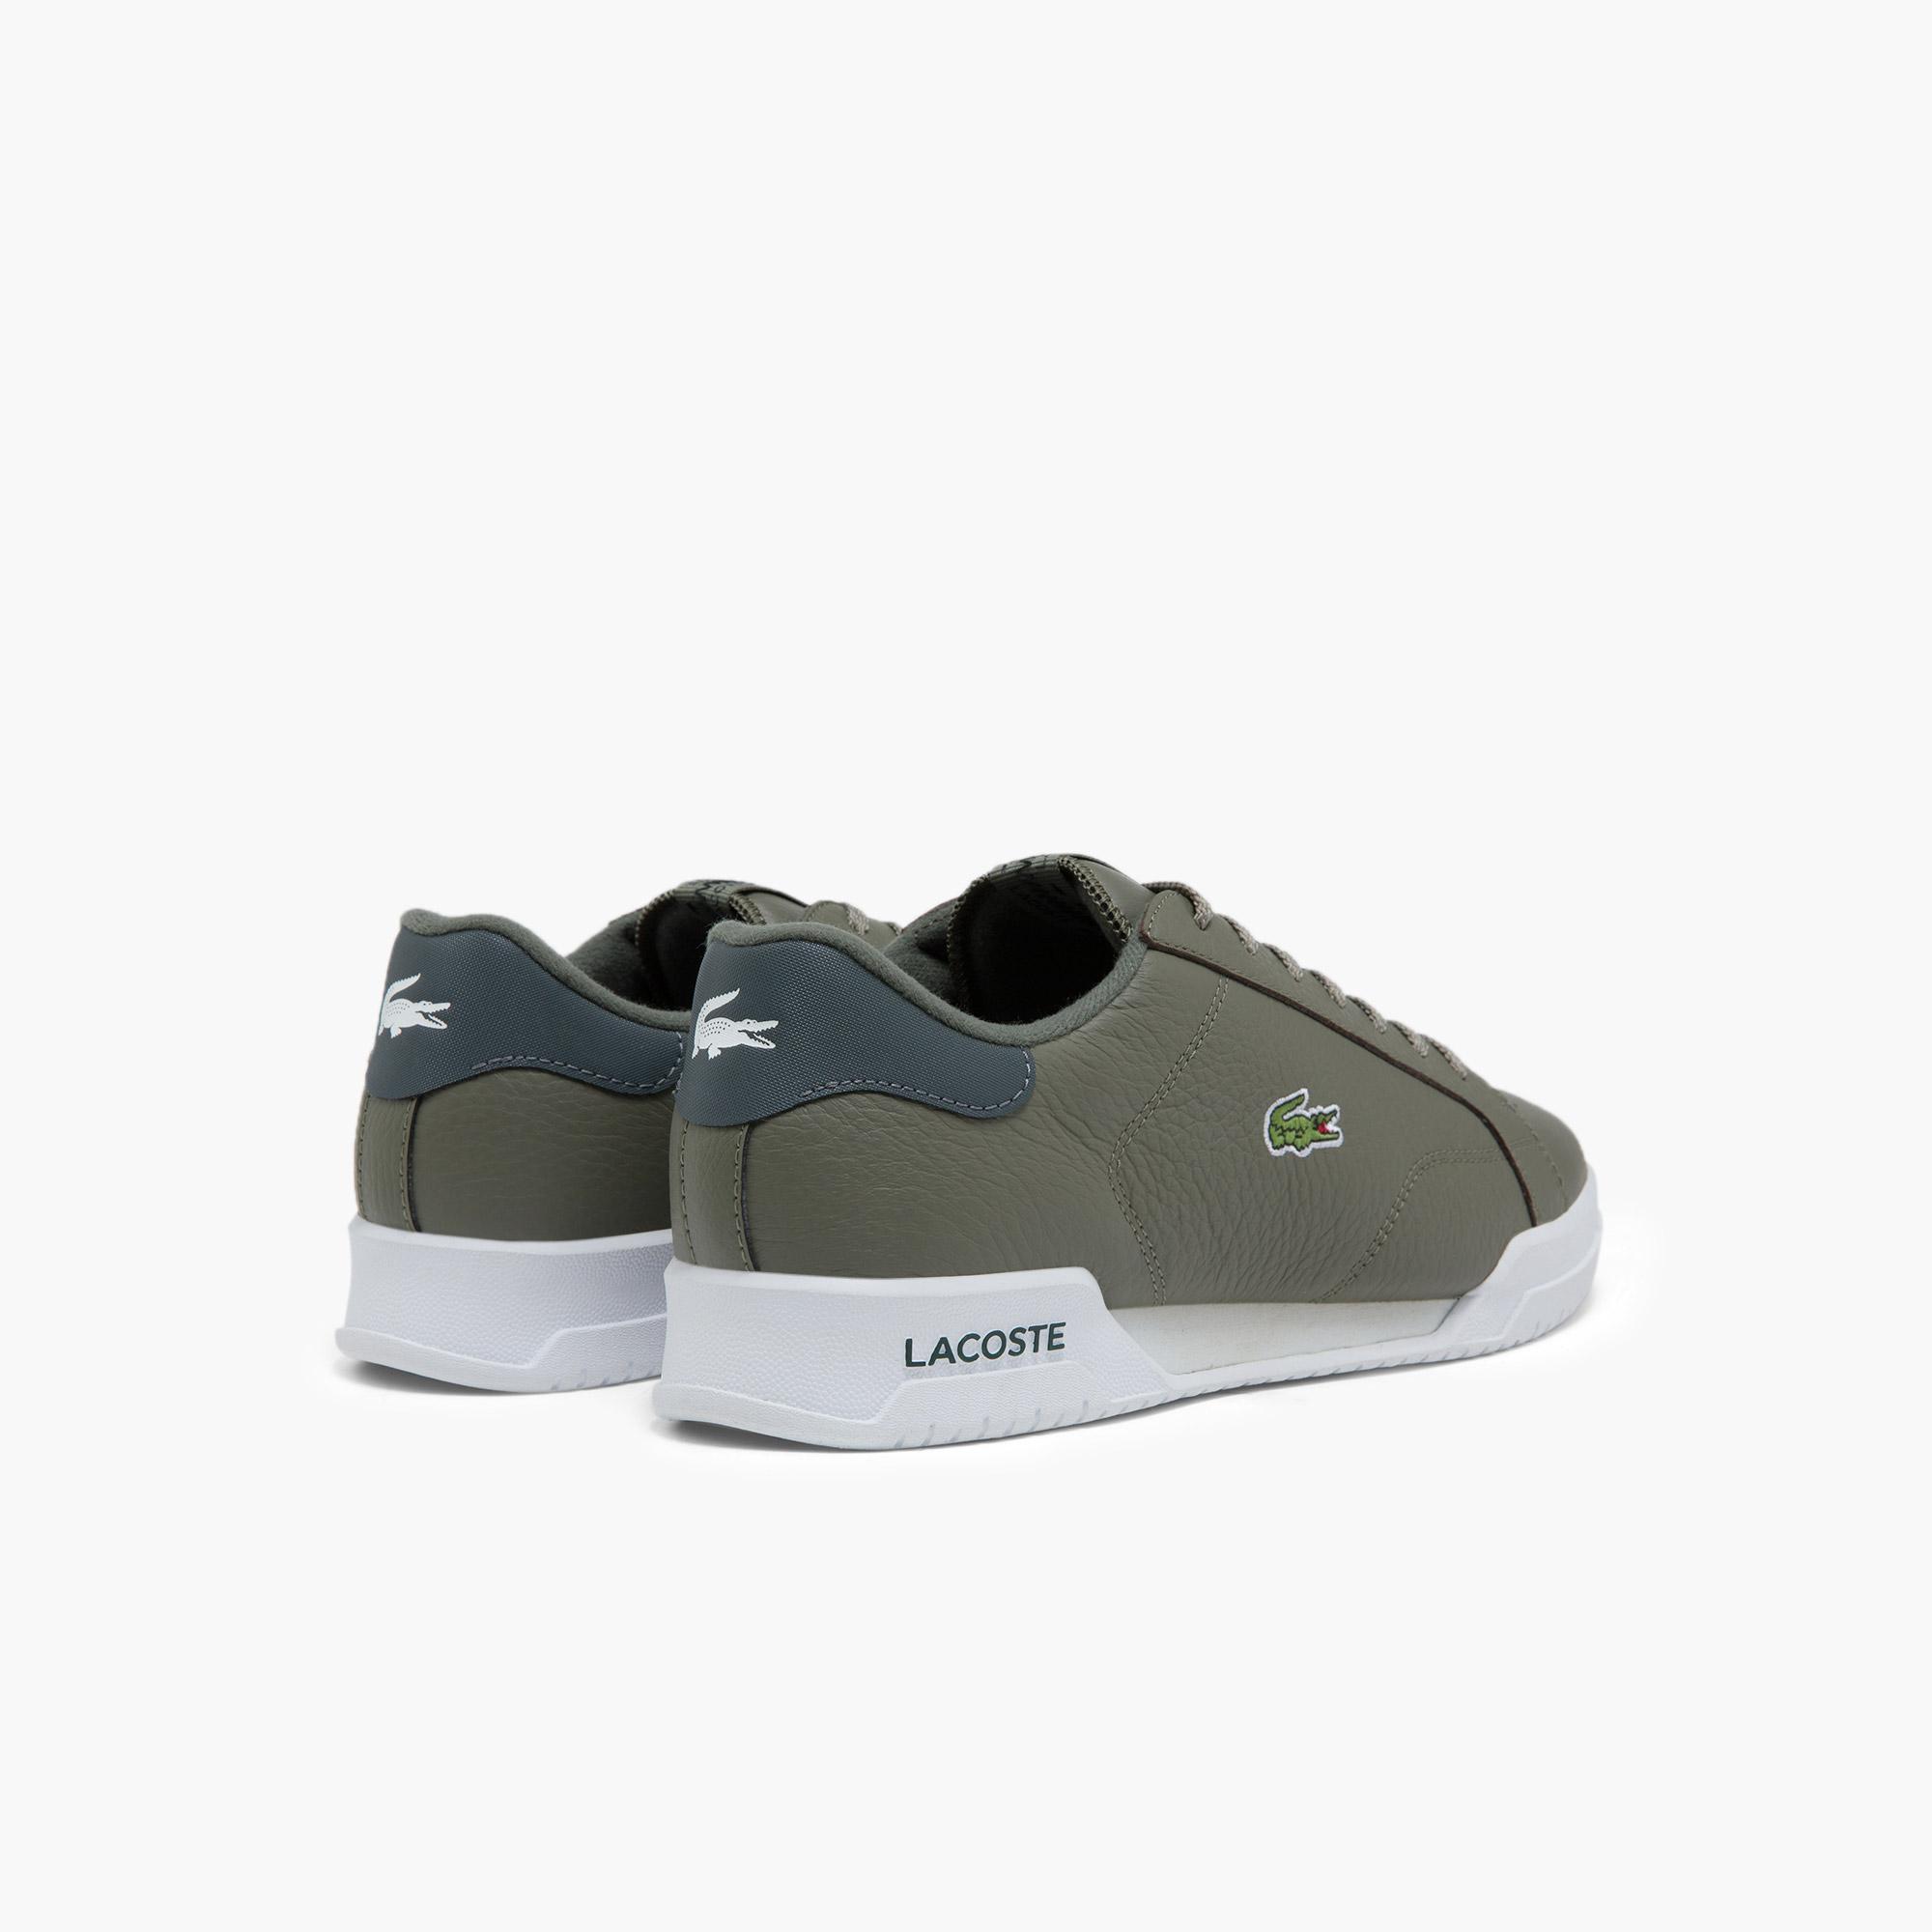 Lacoste Men's TWIN SERVE Sneakers